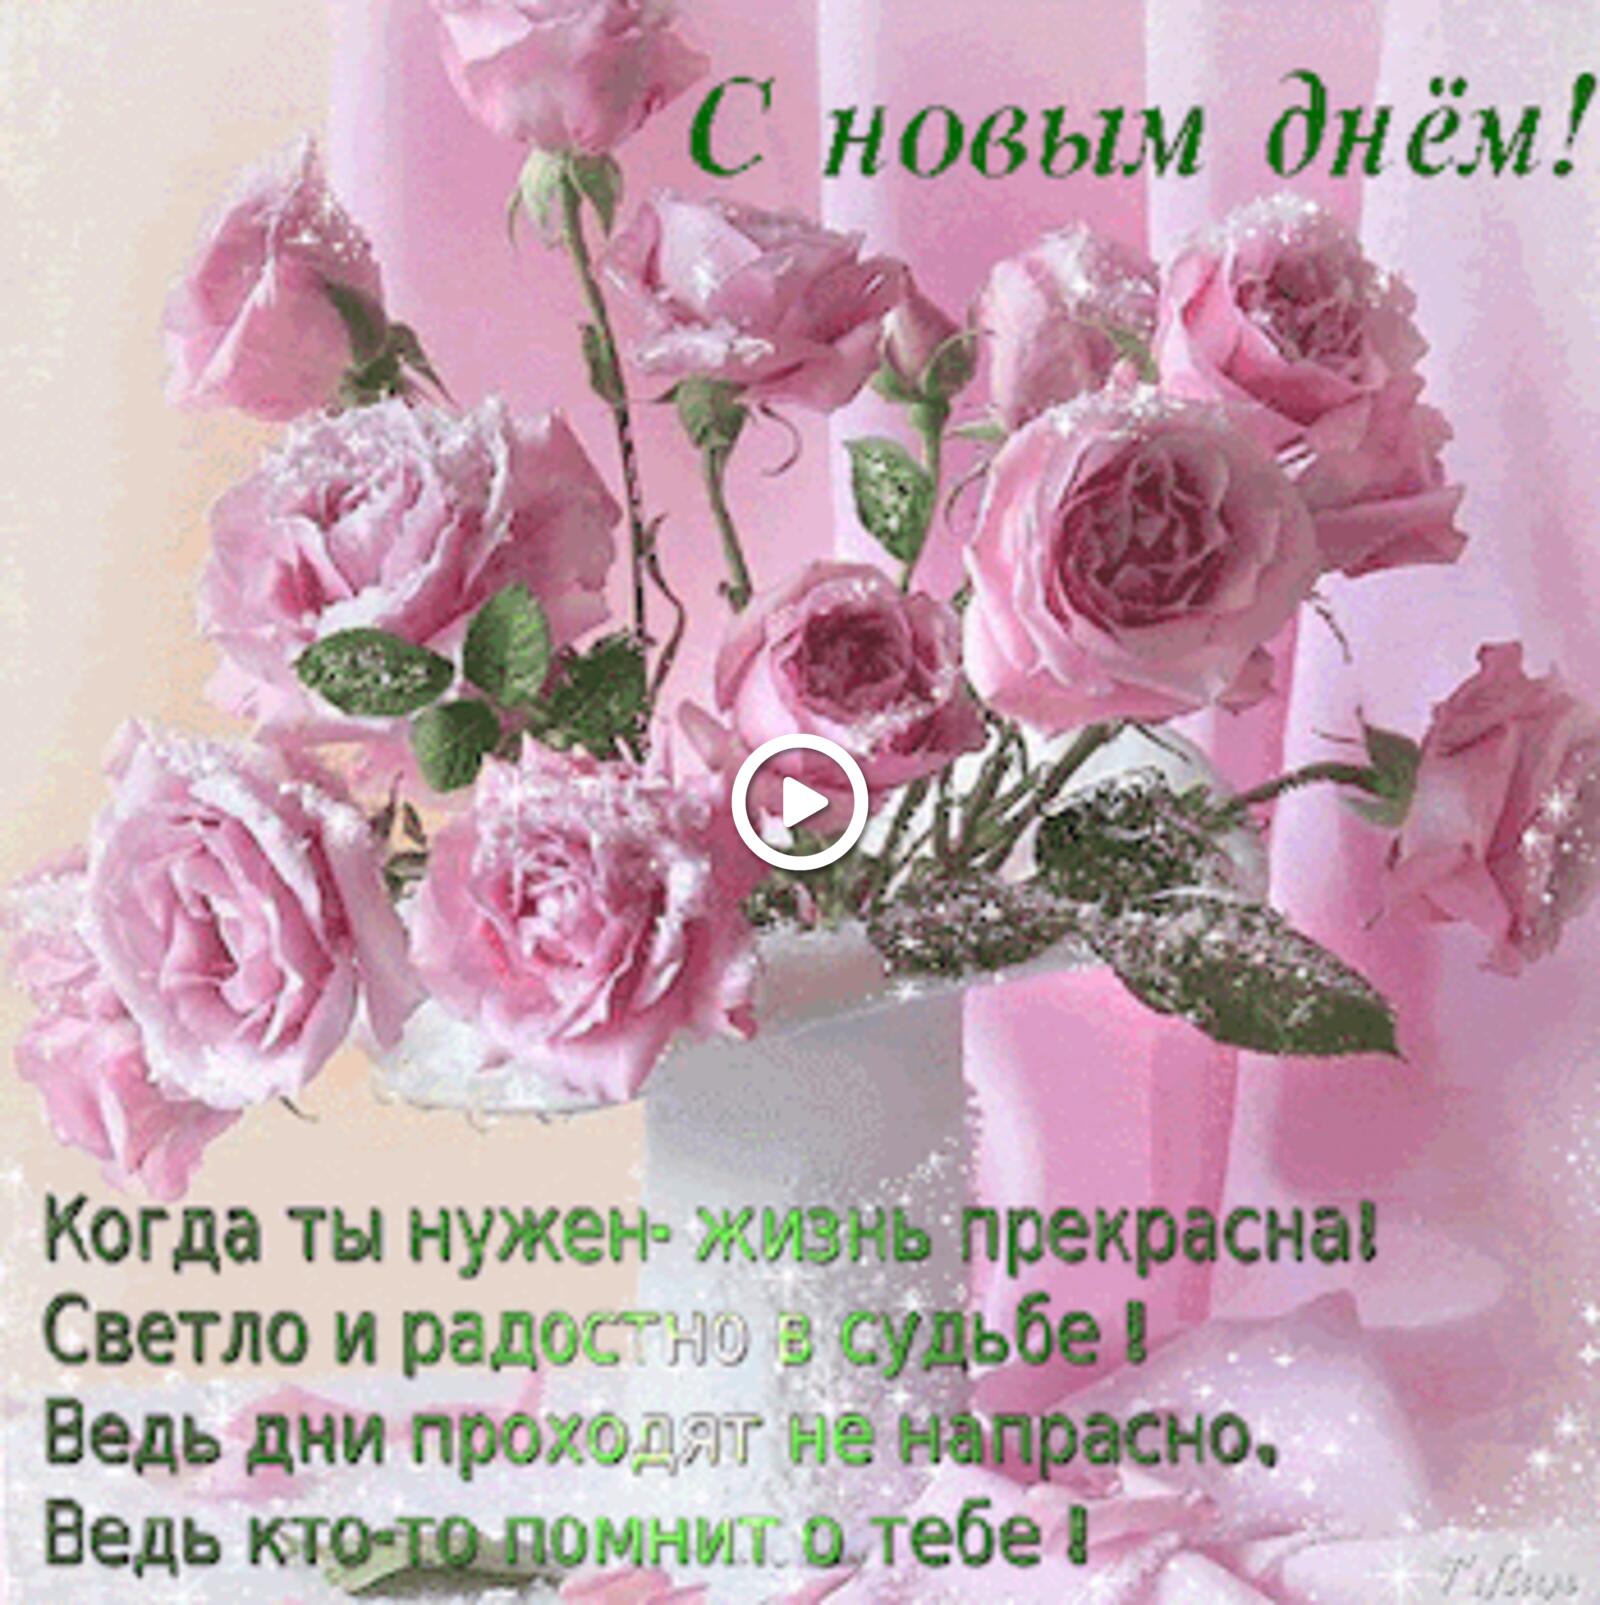 Открытка на тему букет роз розовые розы с новым днем бесплатно